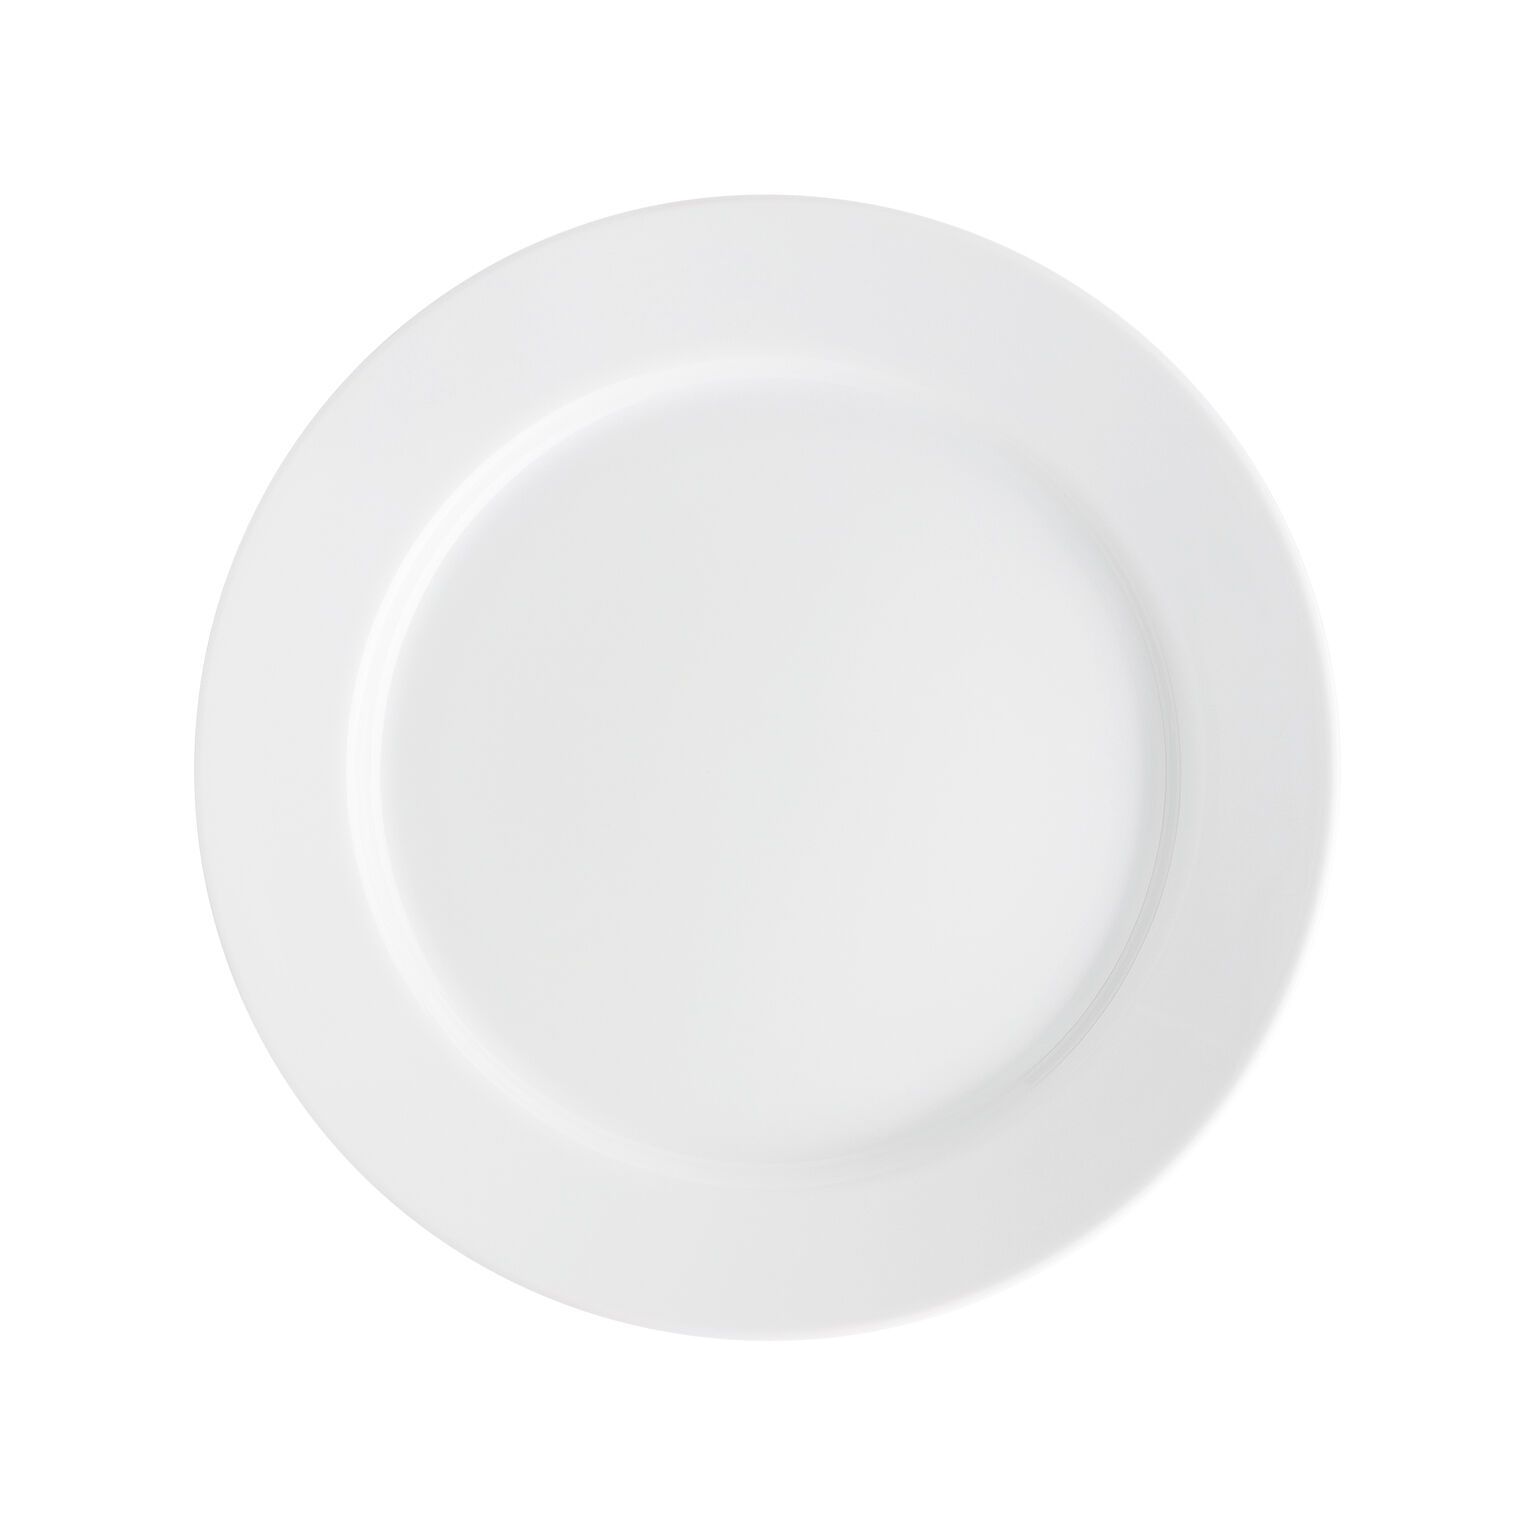 Basic White piatti, Arzberg Cucina Piatto piatto piatto in porcellana piattino porcellana 28 cm 42100 - 590003 -  - 10868 